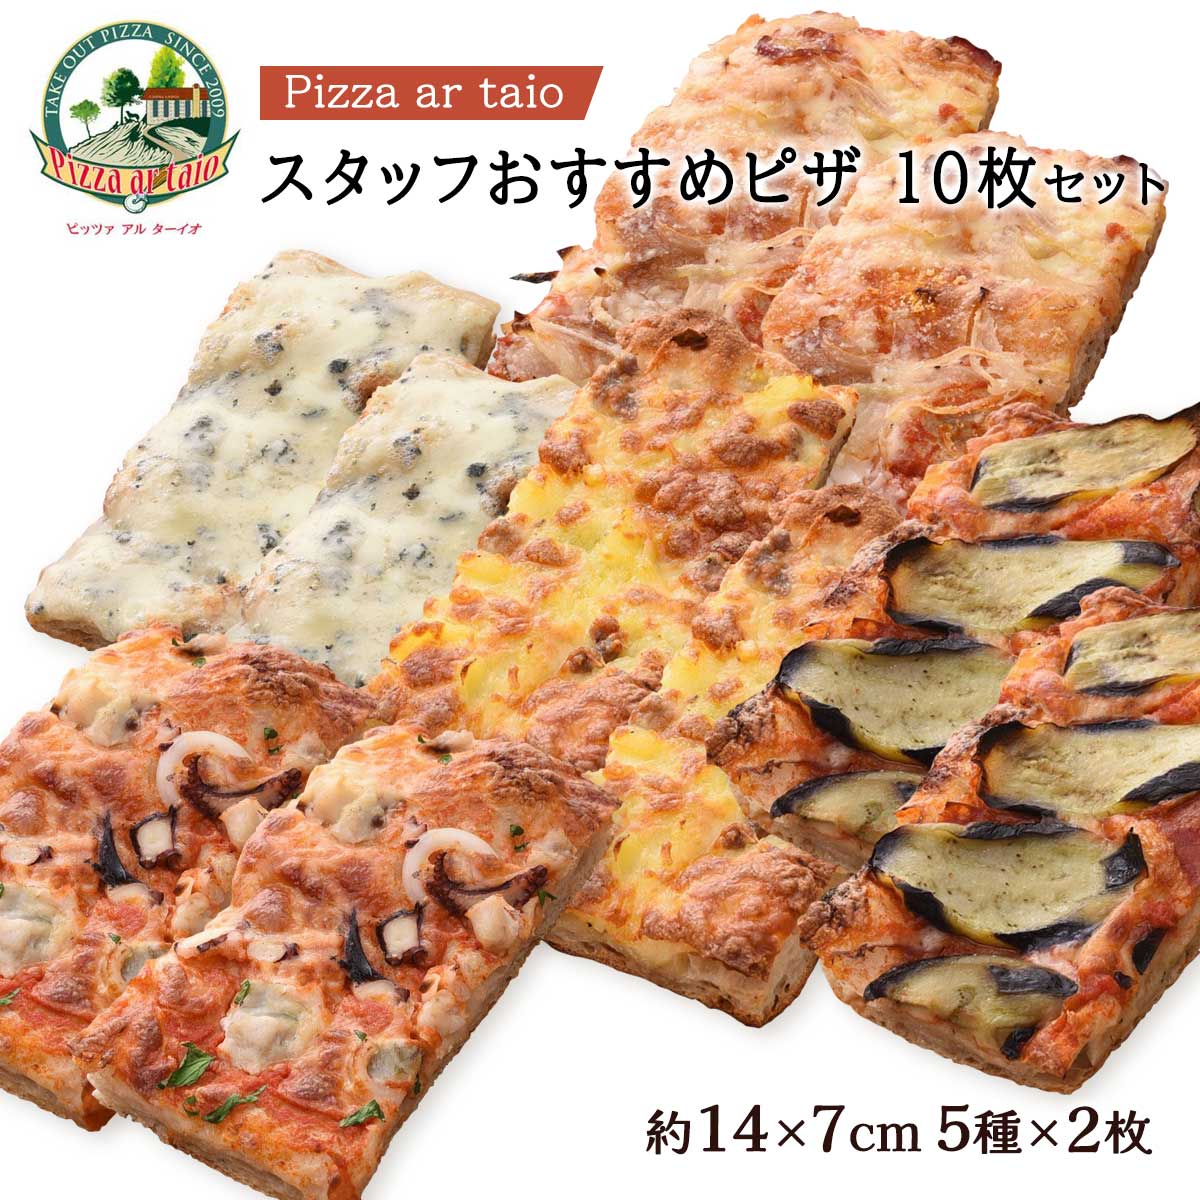 【商品特徴】スタッフおすすめの5種類のピザです。 日本初四角い切り売りピザ。 本場イタリアローマのピザ専門店「ピッツアリウム」で修行した嶋岡圭吾シェフが製造したこだわりの逸品! 【ベーコンと玉ねぎのアマトリチャーナ風ピザ】 佐賀の絶品玉ねぎを使用し、ベーコンと合せました。 大人から子供まで大好きな当店人気No.1のピザです。 【イタリア産4種のチーズピザ】 イタリア産4種類のチーズ モッツァレラチーズ、プロヴォローネチーズ、ゴルゴンゾーラチーズ、グラナパダーノをたっぷり使ってます。 【魚介のペスカトーレピザ】 玄界灘で捕れた真蛸、ヤリイカ、鰆をふんだんに使い一口食べると海の香りが口の中に広がります。 【じゃがいもと自家製ソーセージのピザ】 鹿児島県産馬鈴薯を使い、ボリューム感満載のピザです。 【ナスとモルタデッラのピッツァ】あくの少ない茄子と、モルタデッラを合わせ、たっぷりのモッツァレラチーズで仕上げました。 間違いなしの一品です。 商品説明メーカー所在地 原材料 【ベーコンと玉ねぎのアマトリチャーナ風ピザ】小麦粉(福岡県田中製粉製石挽き強力粉)、トマトソース、ナチュラルチーズ(生乳)、玉ねぎ、ベーコン、グラナパダーノチーズ、オリーブオイル、リン酸塩(Na)、発色剤(亜硝酸Na)、(原材料の一部に乳、卵を含む) 【イタリア産4種のチーズピザ】小麦粉(福岡県田中製粉製石挽き強力粉)、ホワイトソース(乳製品、マーガリン、豚脂等)、モッツァレラチーズ、プロヴォローネチーズ、ゴルゴンゾーラチーズ、グラナパダーノチーズ、オリーブオイル(原材料の一部に乳、卵、大豆を含む) 【魚介のペスカトーレピザ】小麦粉(福岡県田中製粉製石挽き強力粉)、ブロヴォローネチーズ、サワラ、タコ、アオリイカ、トマトソース、ケッパー、オリーブオイル、オレガノ、ニンニク、食塩(原材料の一部に乳を含む) 【じゃがいもと自家製ソーセージのピザ】小麦粉(福岡県田中製粉製石挽き強力粉)、ジャガイモ、豚肉、モッツアレラチーズ、ヤングコーン、ニンニク、オリーブ油、ハーブ各種(ローズマリー、オレガノ)塩、胡椒、pH調整剤(原材料に小麦、乳を含む) 【ナスとモルタデッラのピッツァ】小麦粉(国内製造)、トマトソース、モッツァレラチーズ、ナス、ボロニアソーセージ、食用調合油、食塩、オリーブオイル、ドライイースト、砂糖/リン酸塩(Na、K)、香辛料抽出物、酸化防止剤(V.C)、発色剤(亜硝酸Na)、微粒二酸化ケイ素、(一部に小麦、乳成分、豚肉を含む) 原産国 日本 内容量 5種類各2枚 アレルギー表示 小麦、乳、大豆、卵、豚肉、イカ 温度帯 冷凍 メーカー名 ピッツァアルターイオ福岡県福岡市西区福重1-18-10